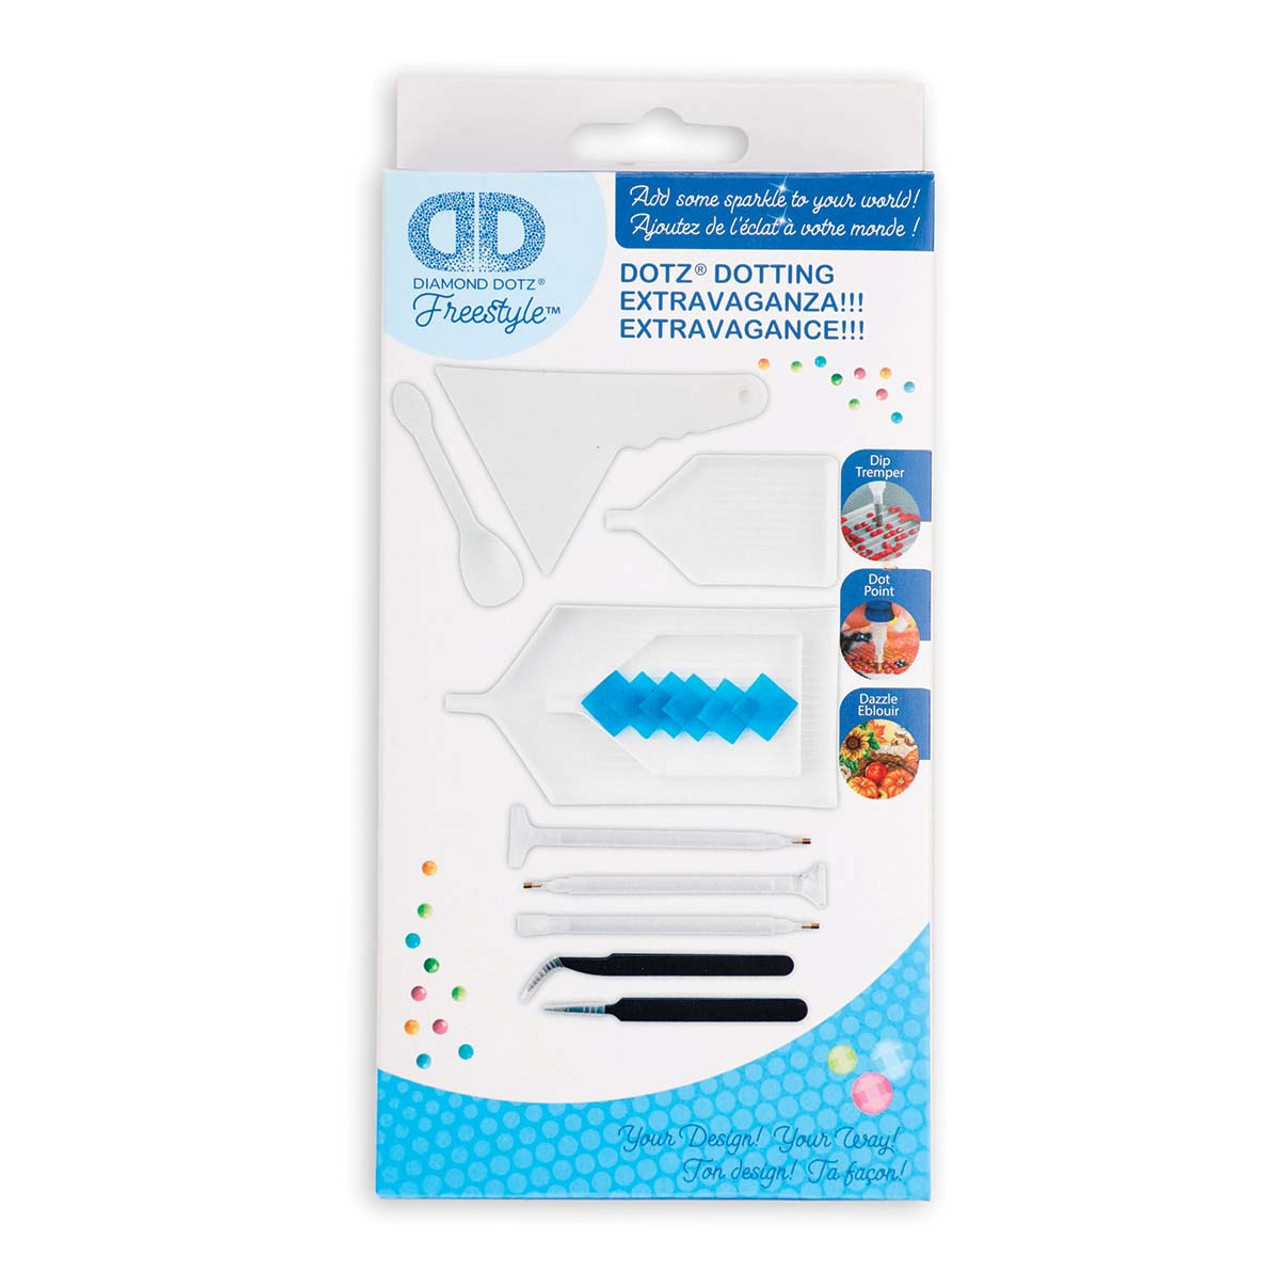 Diamond Dotz Kits - Search Shopping